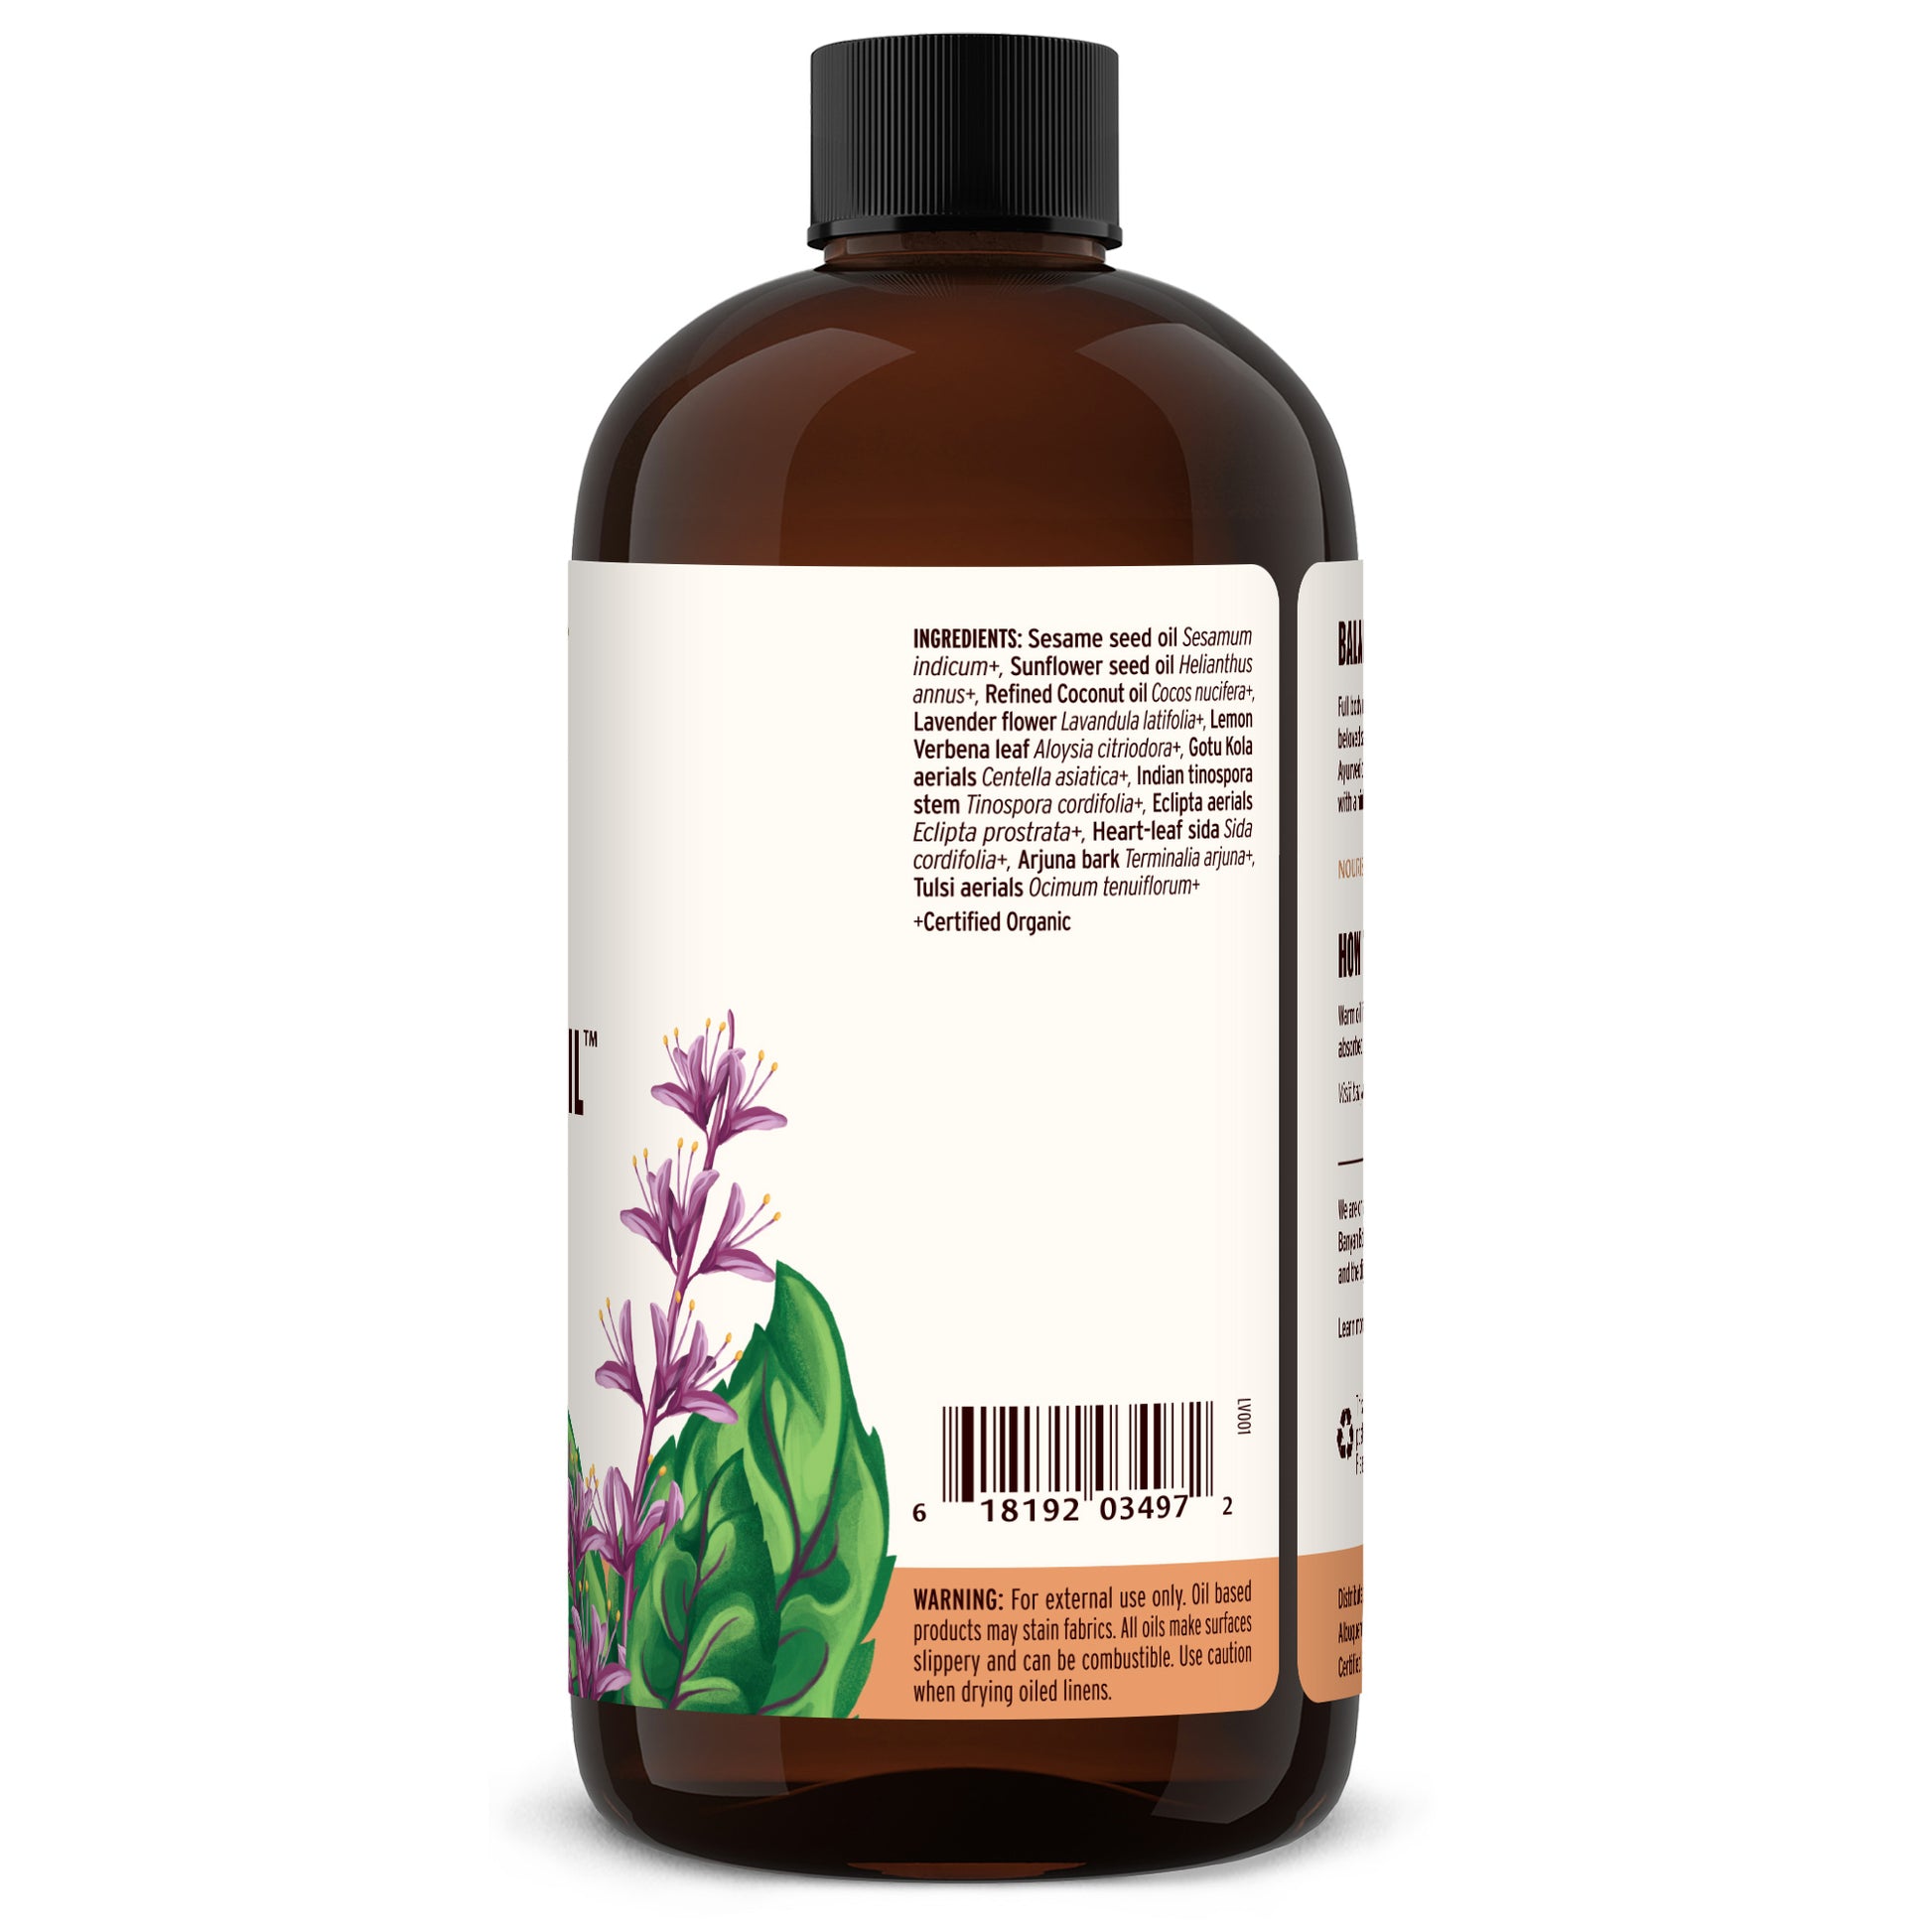 24 fl oz: Daily Massage Oil Ingredients